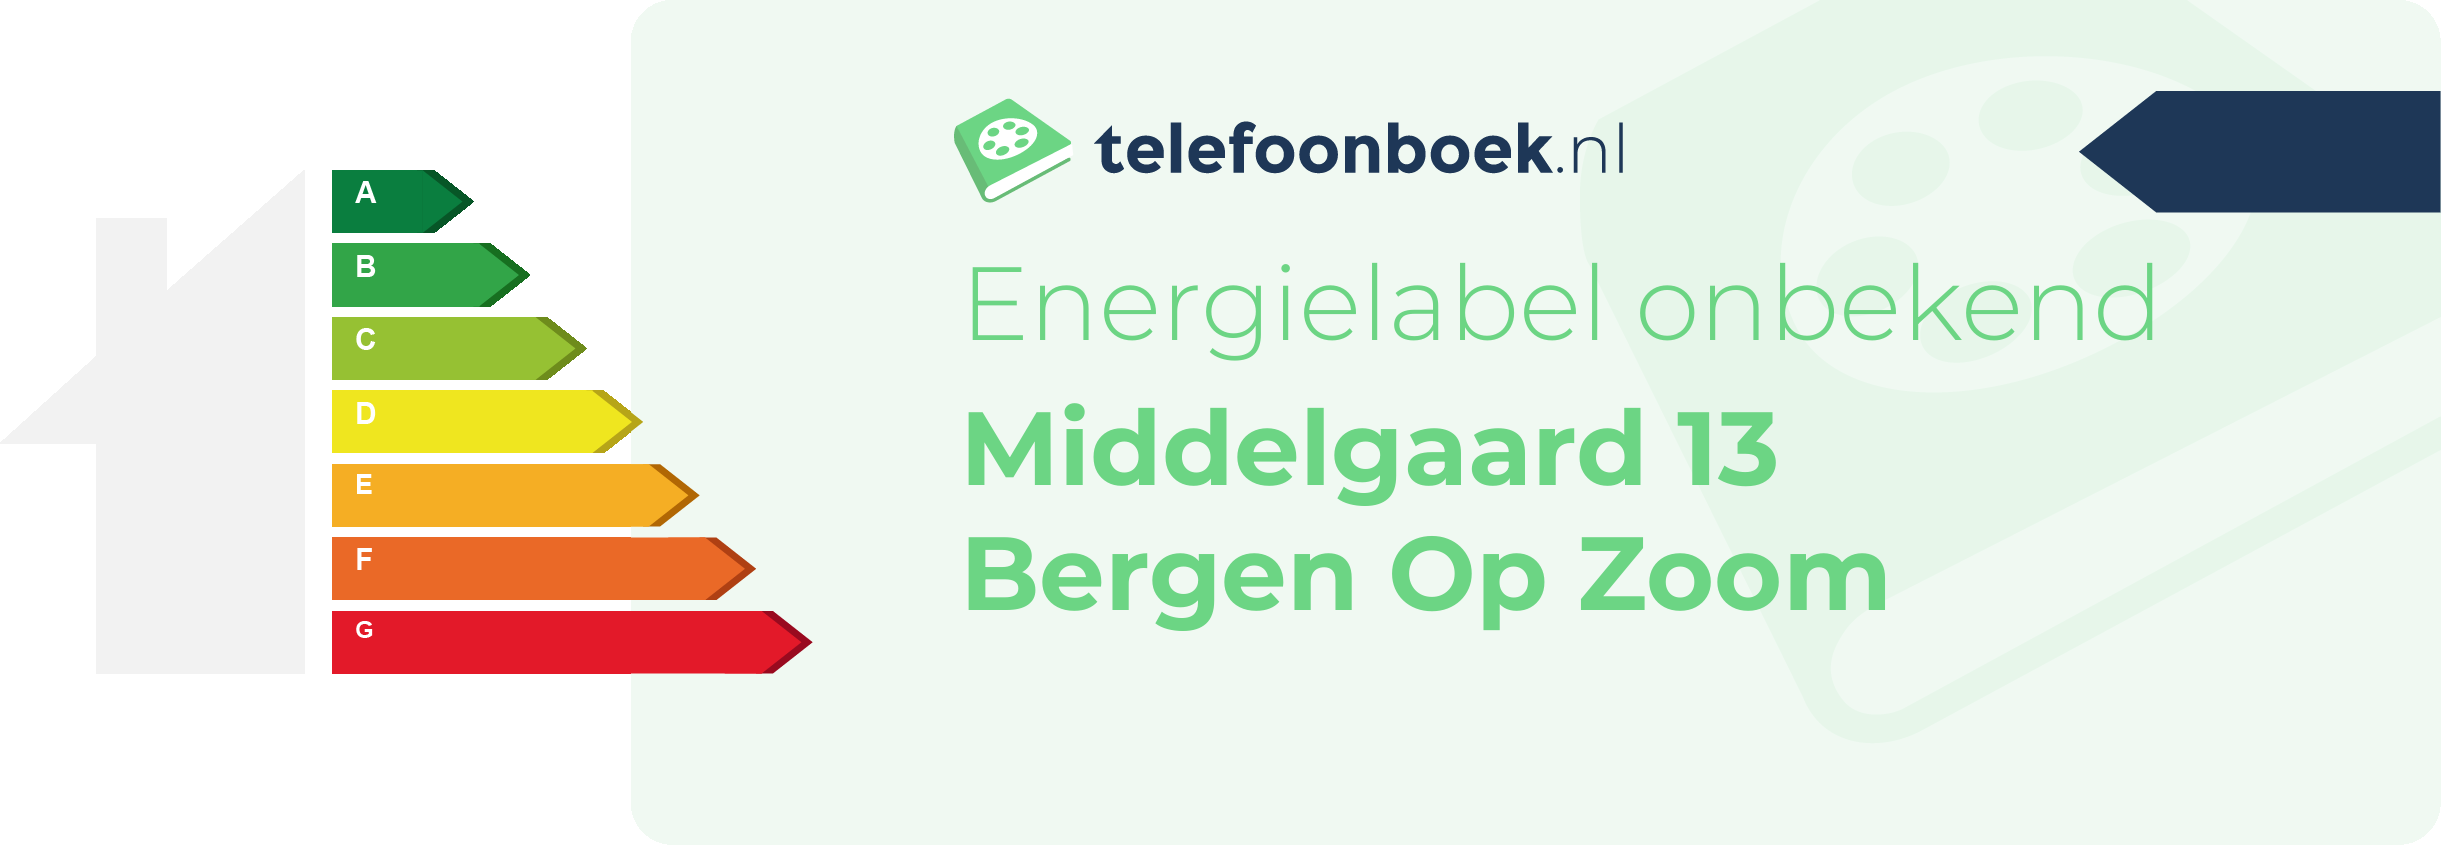 Energielabel Middelgaard 13 Bergen Op Zoom